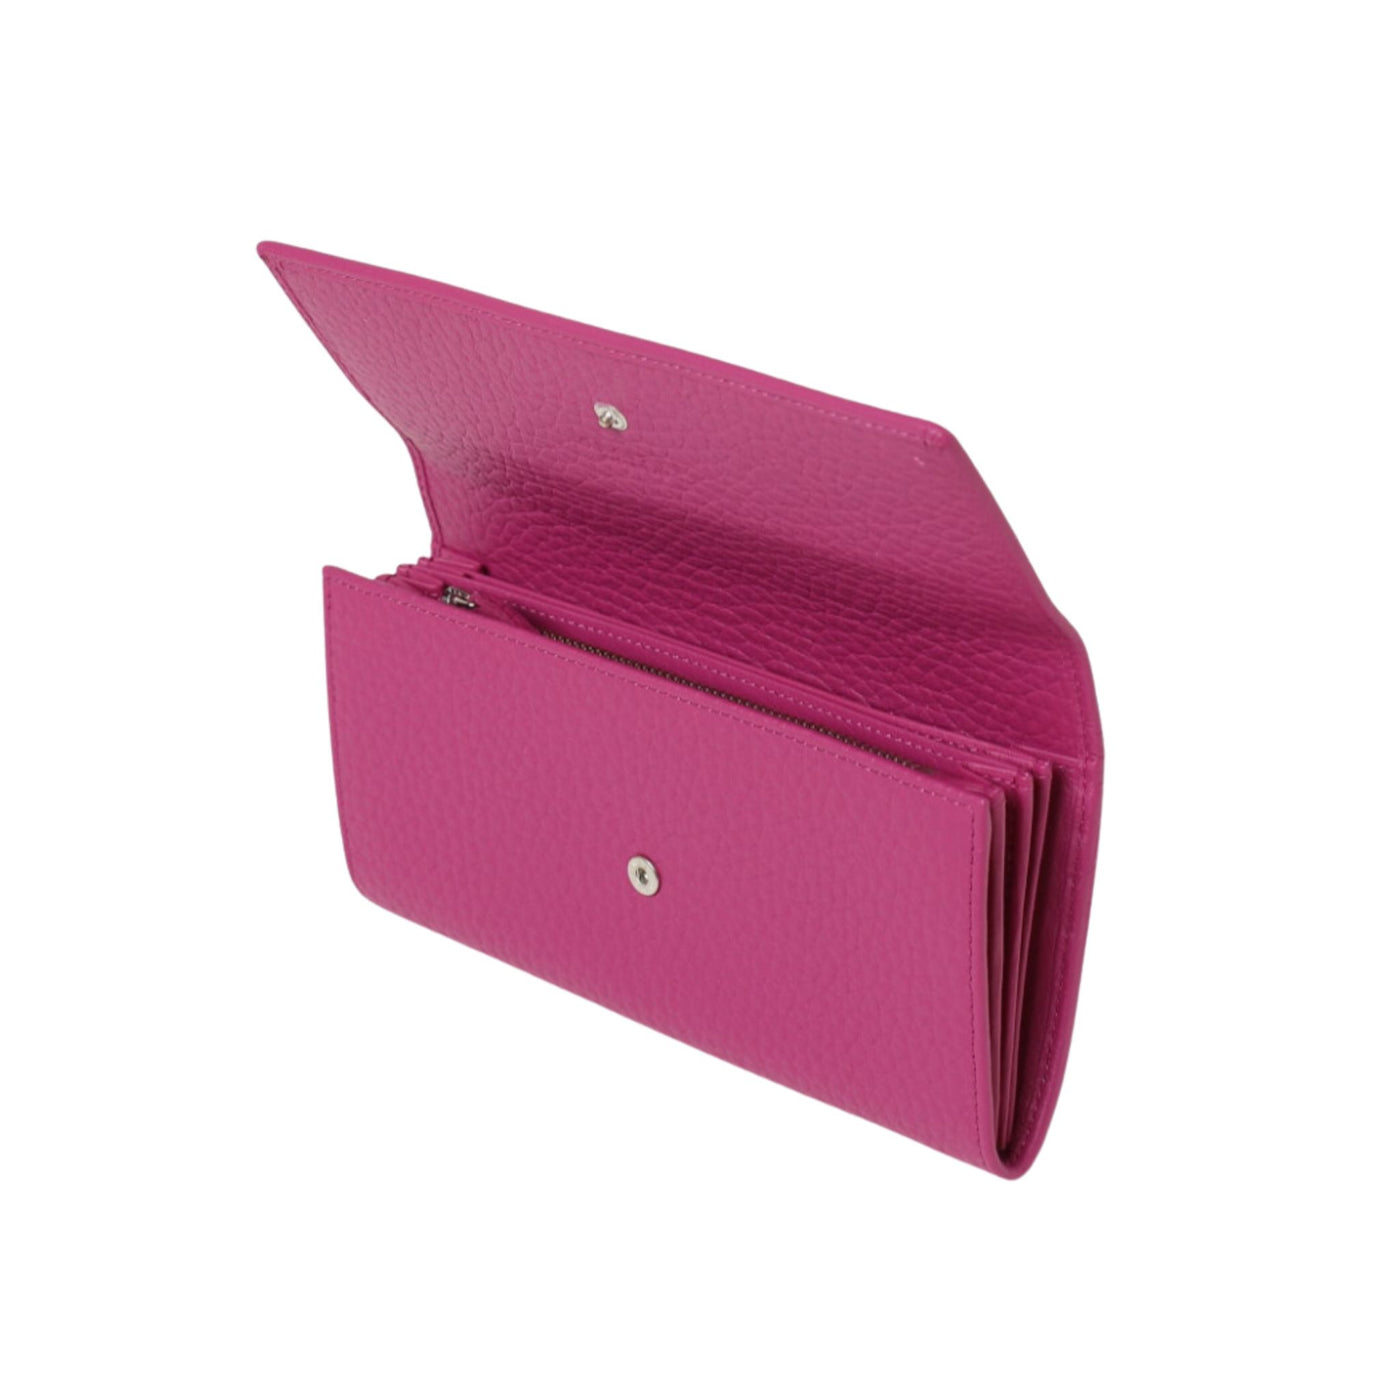 Fuchsia women's wallet in leather